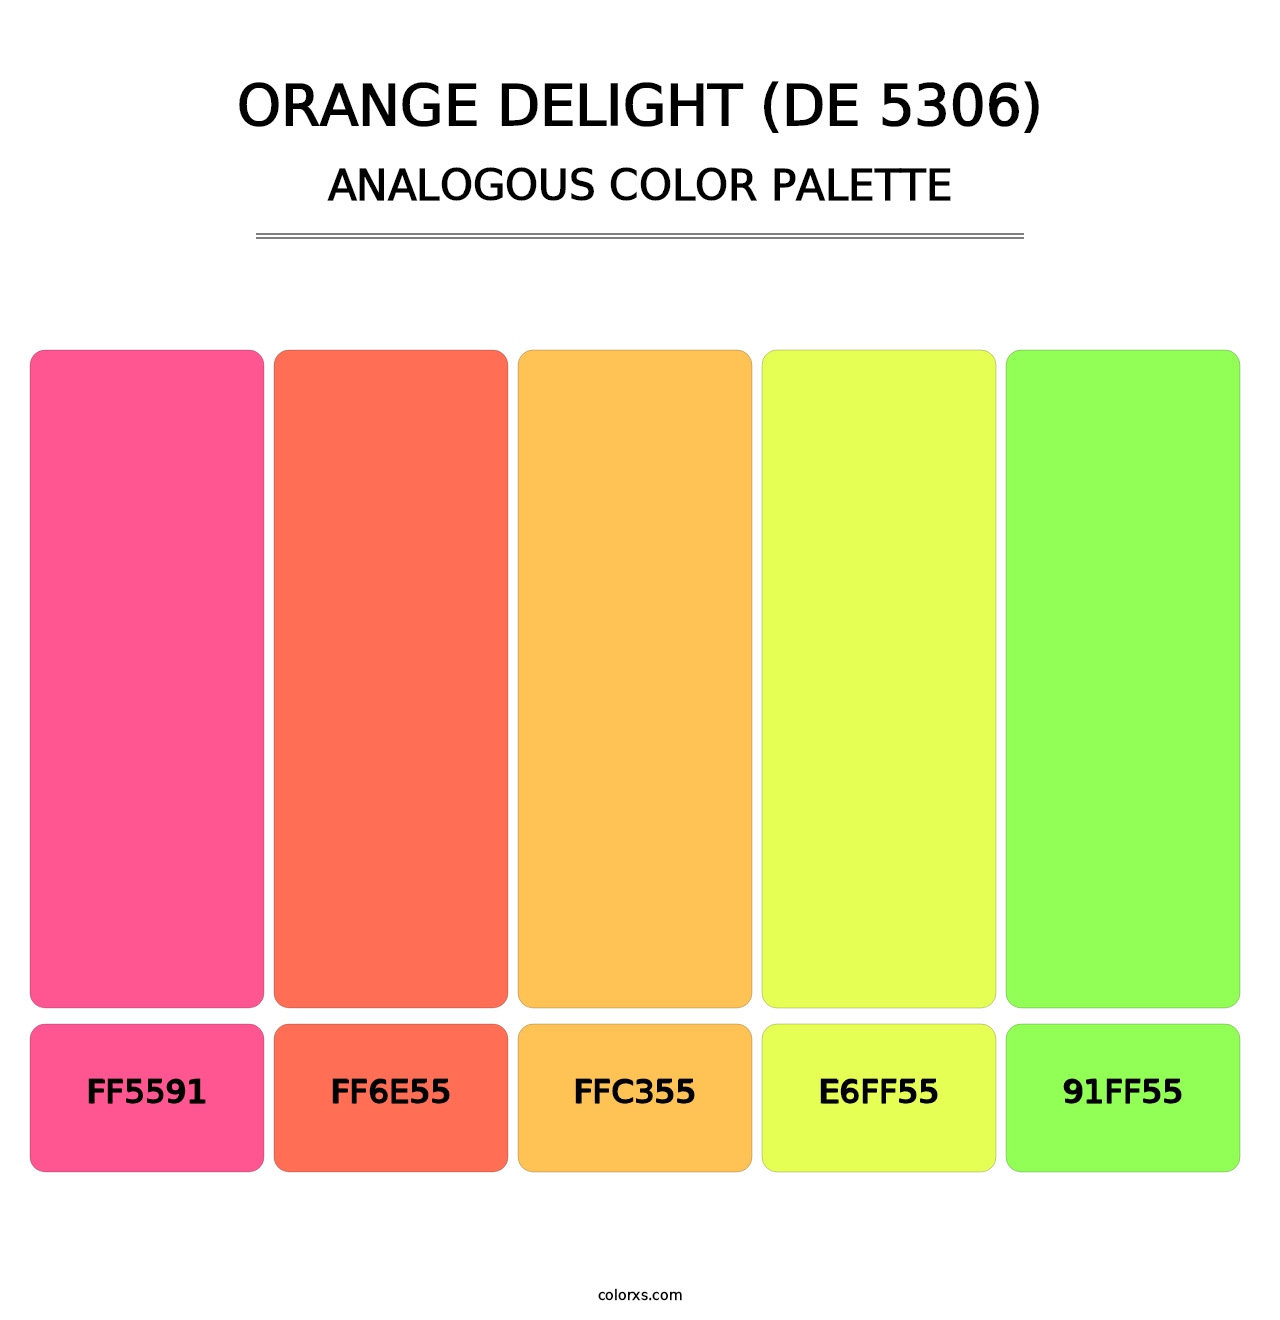 Orange Delight (DE 5306) - Analogous Color Palette